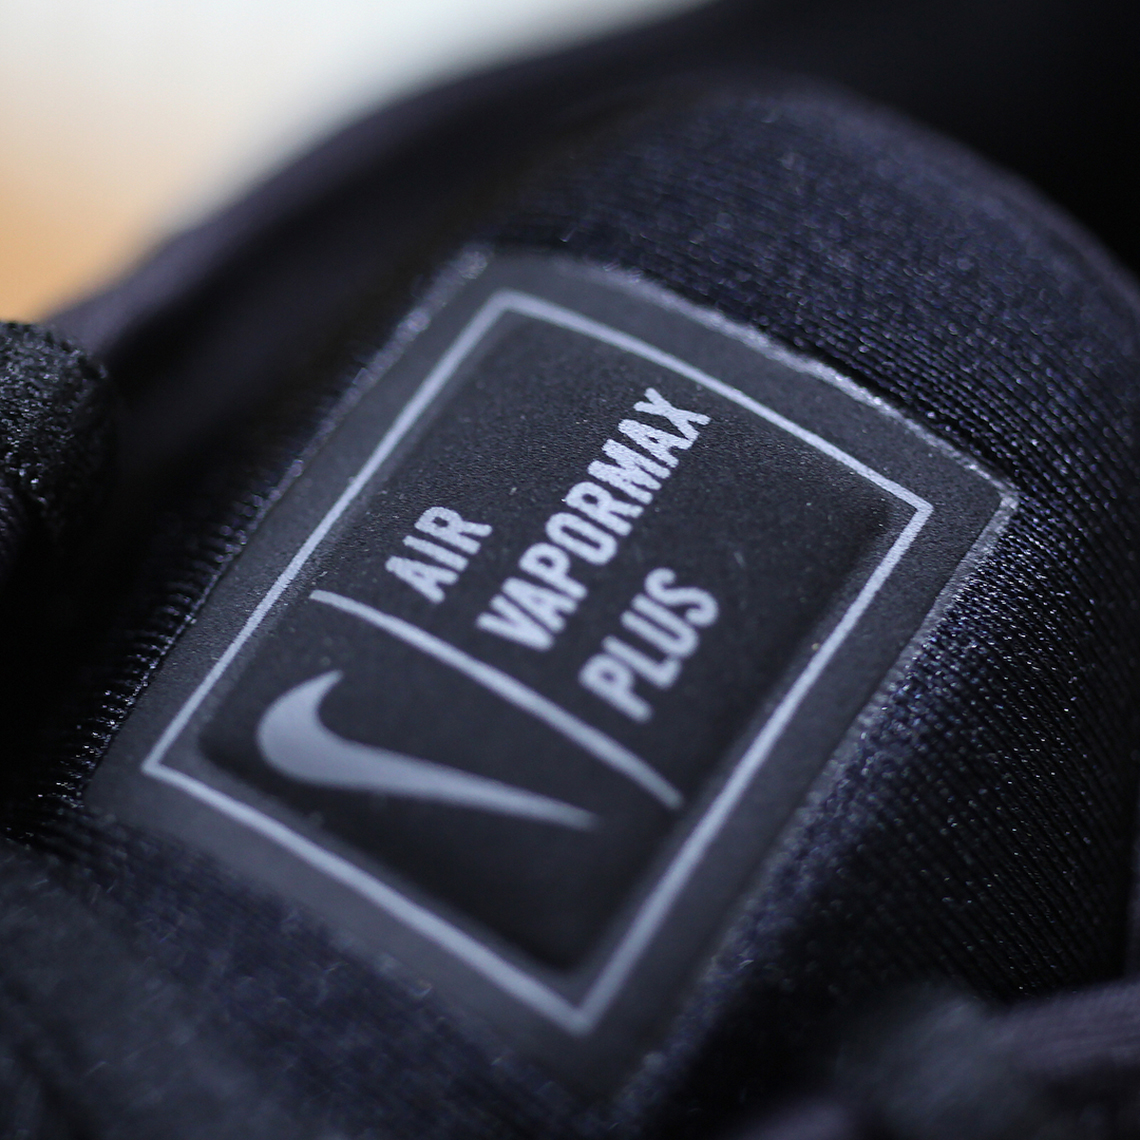 Nike Vapormax Plus Triple Black Detailed Look 6